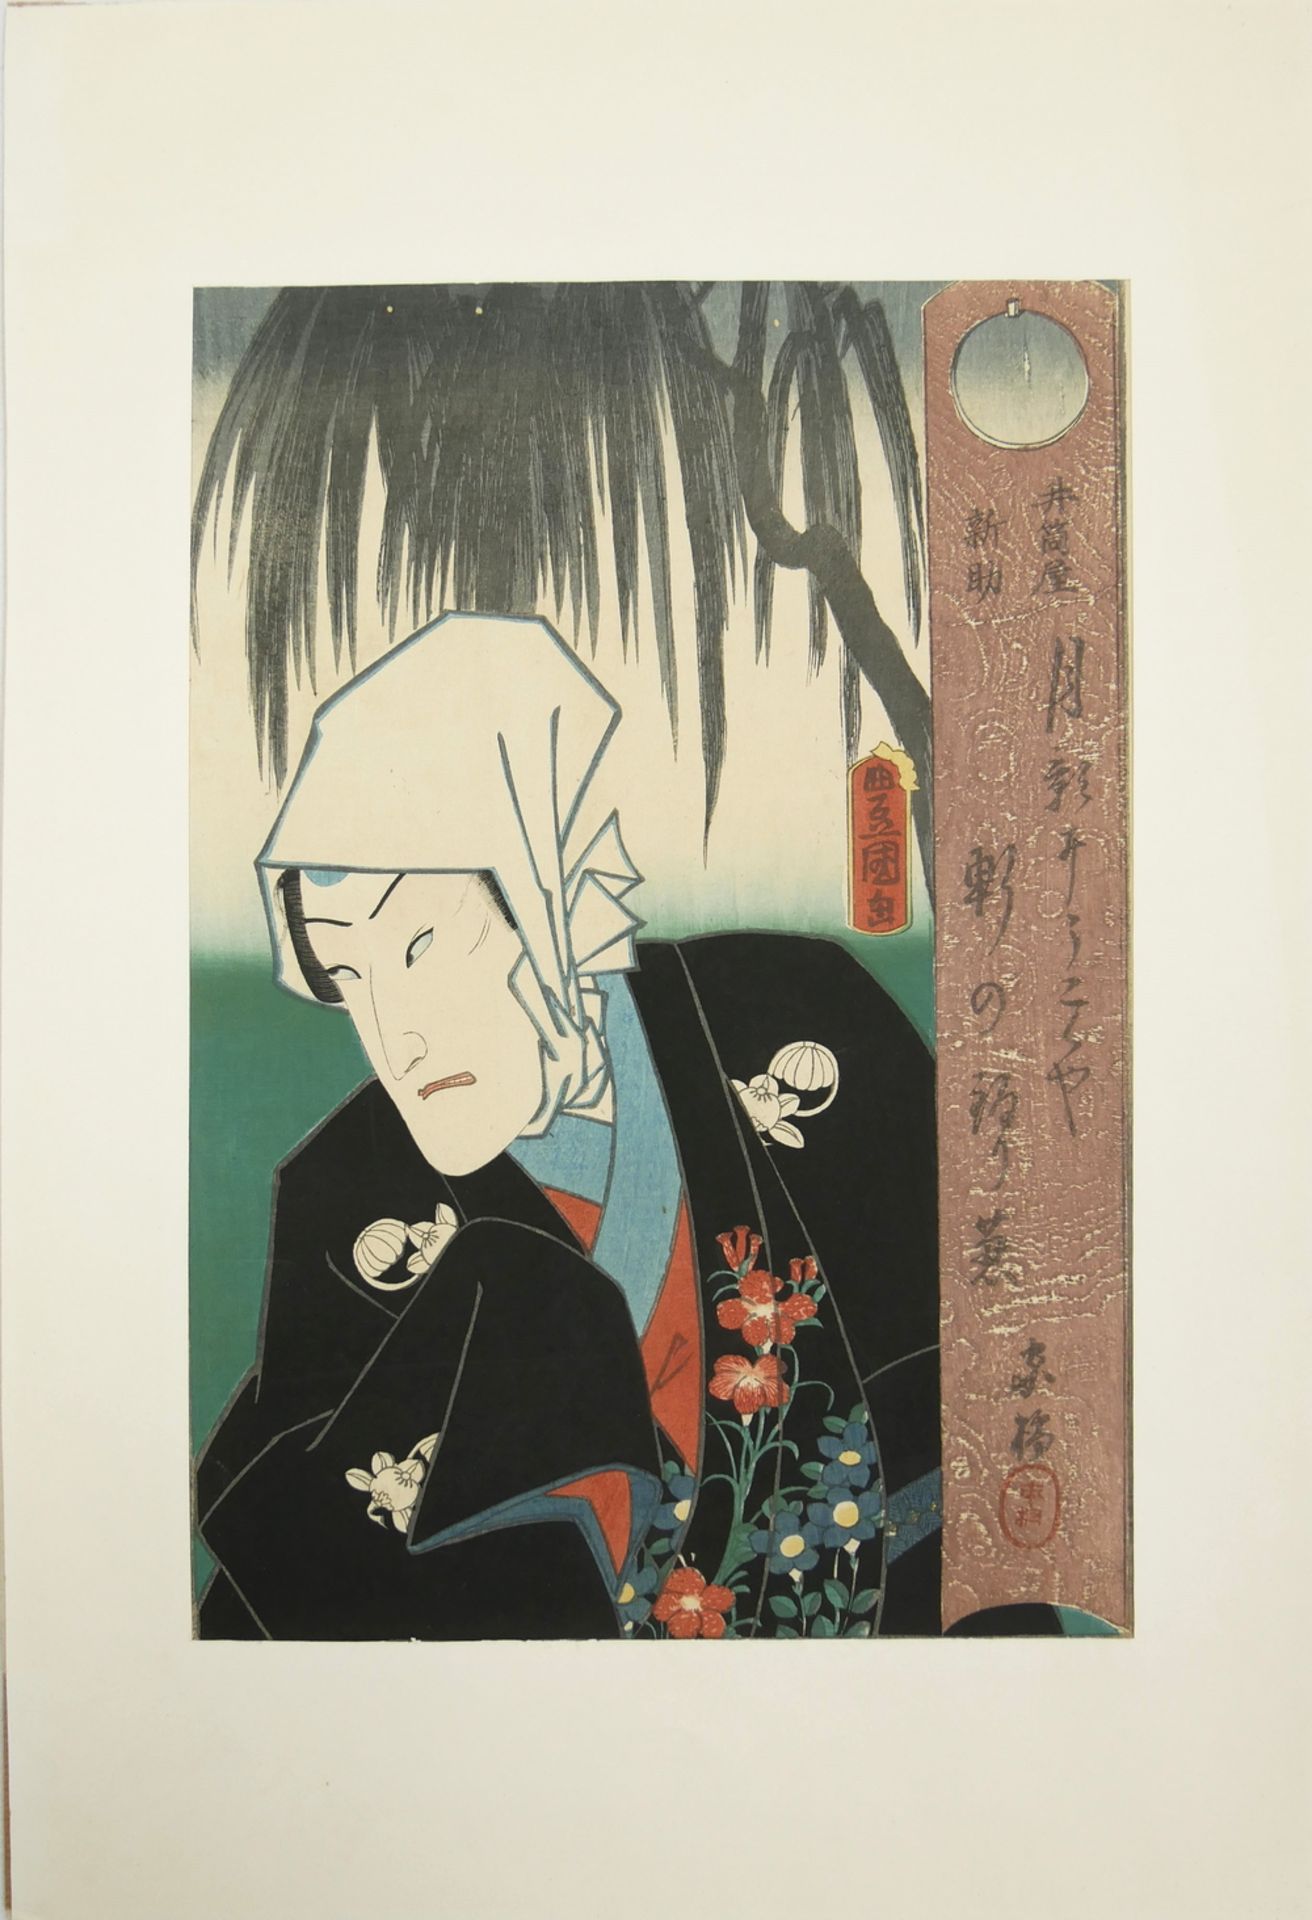 Toyokuni III. Grafik, signiert mit Schriftzeichen. Gesamtmaße: 32 x 49 cm